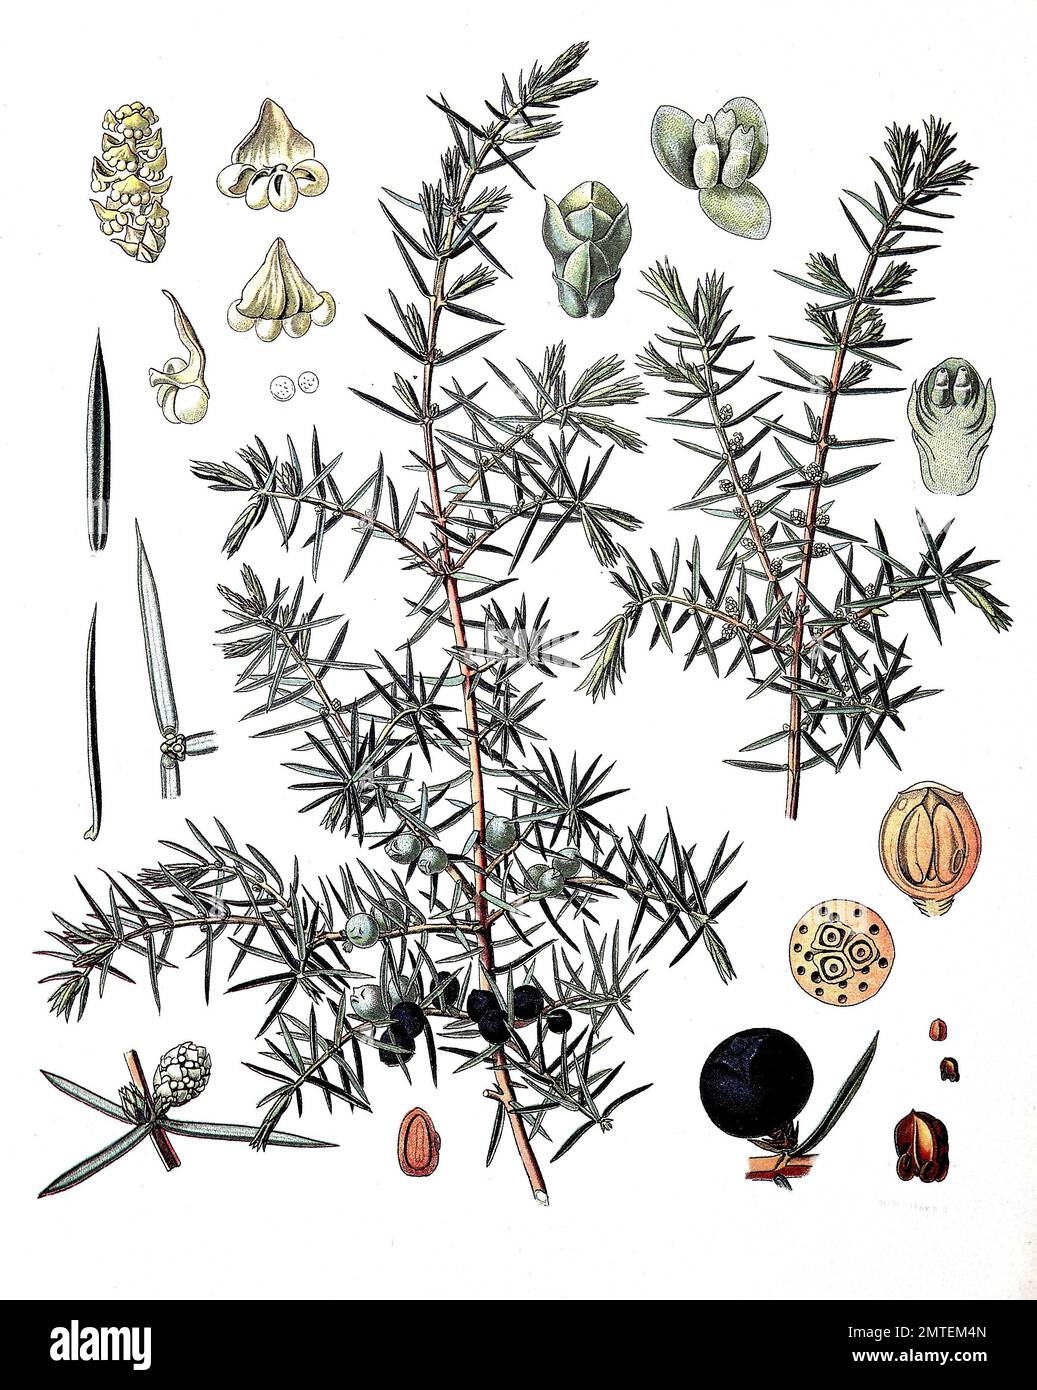 Juniperus communis, le genévrier commun, est une espèce de conifère du genre Juniperus, plante médicinale Banque D'Images